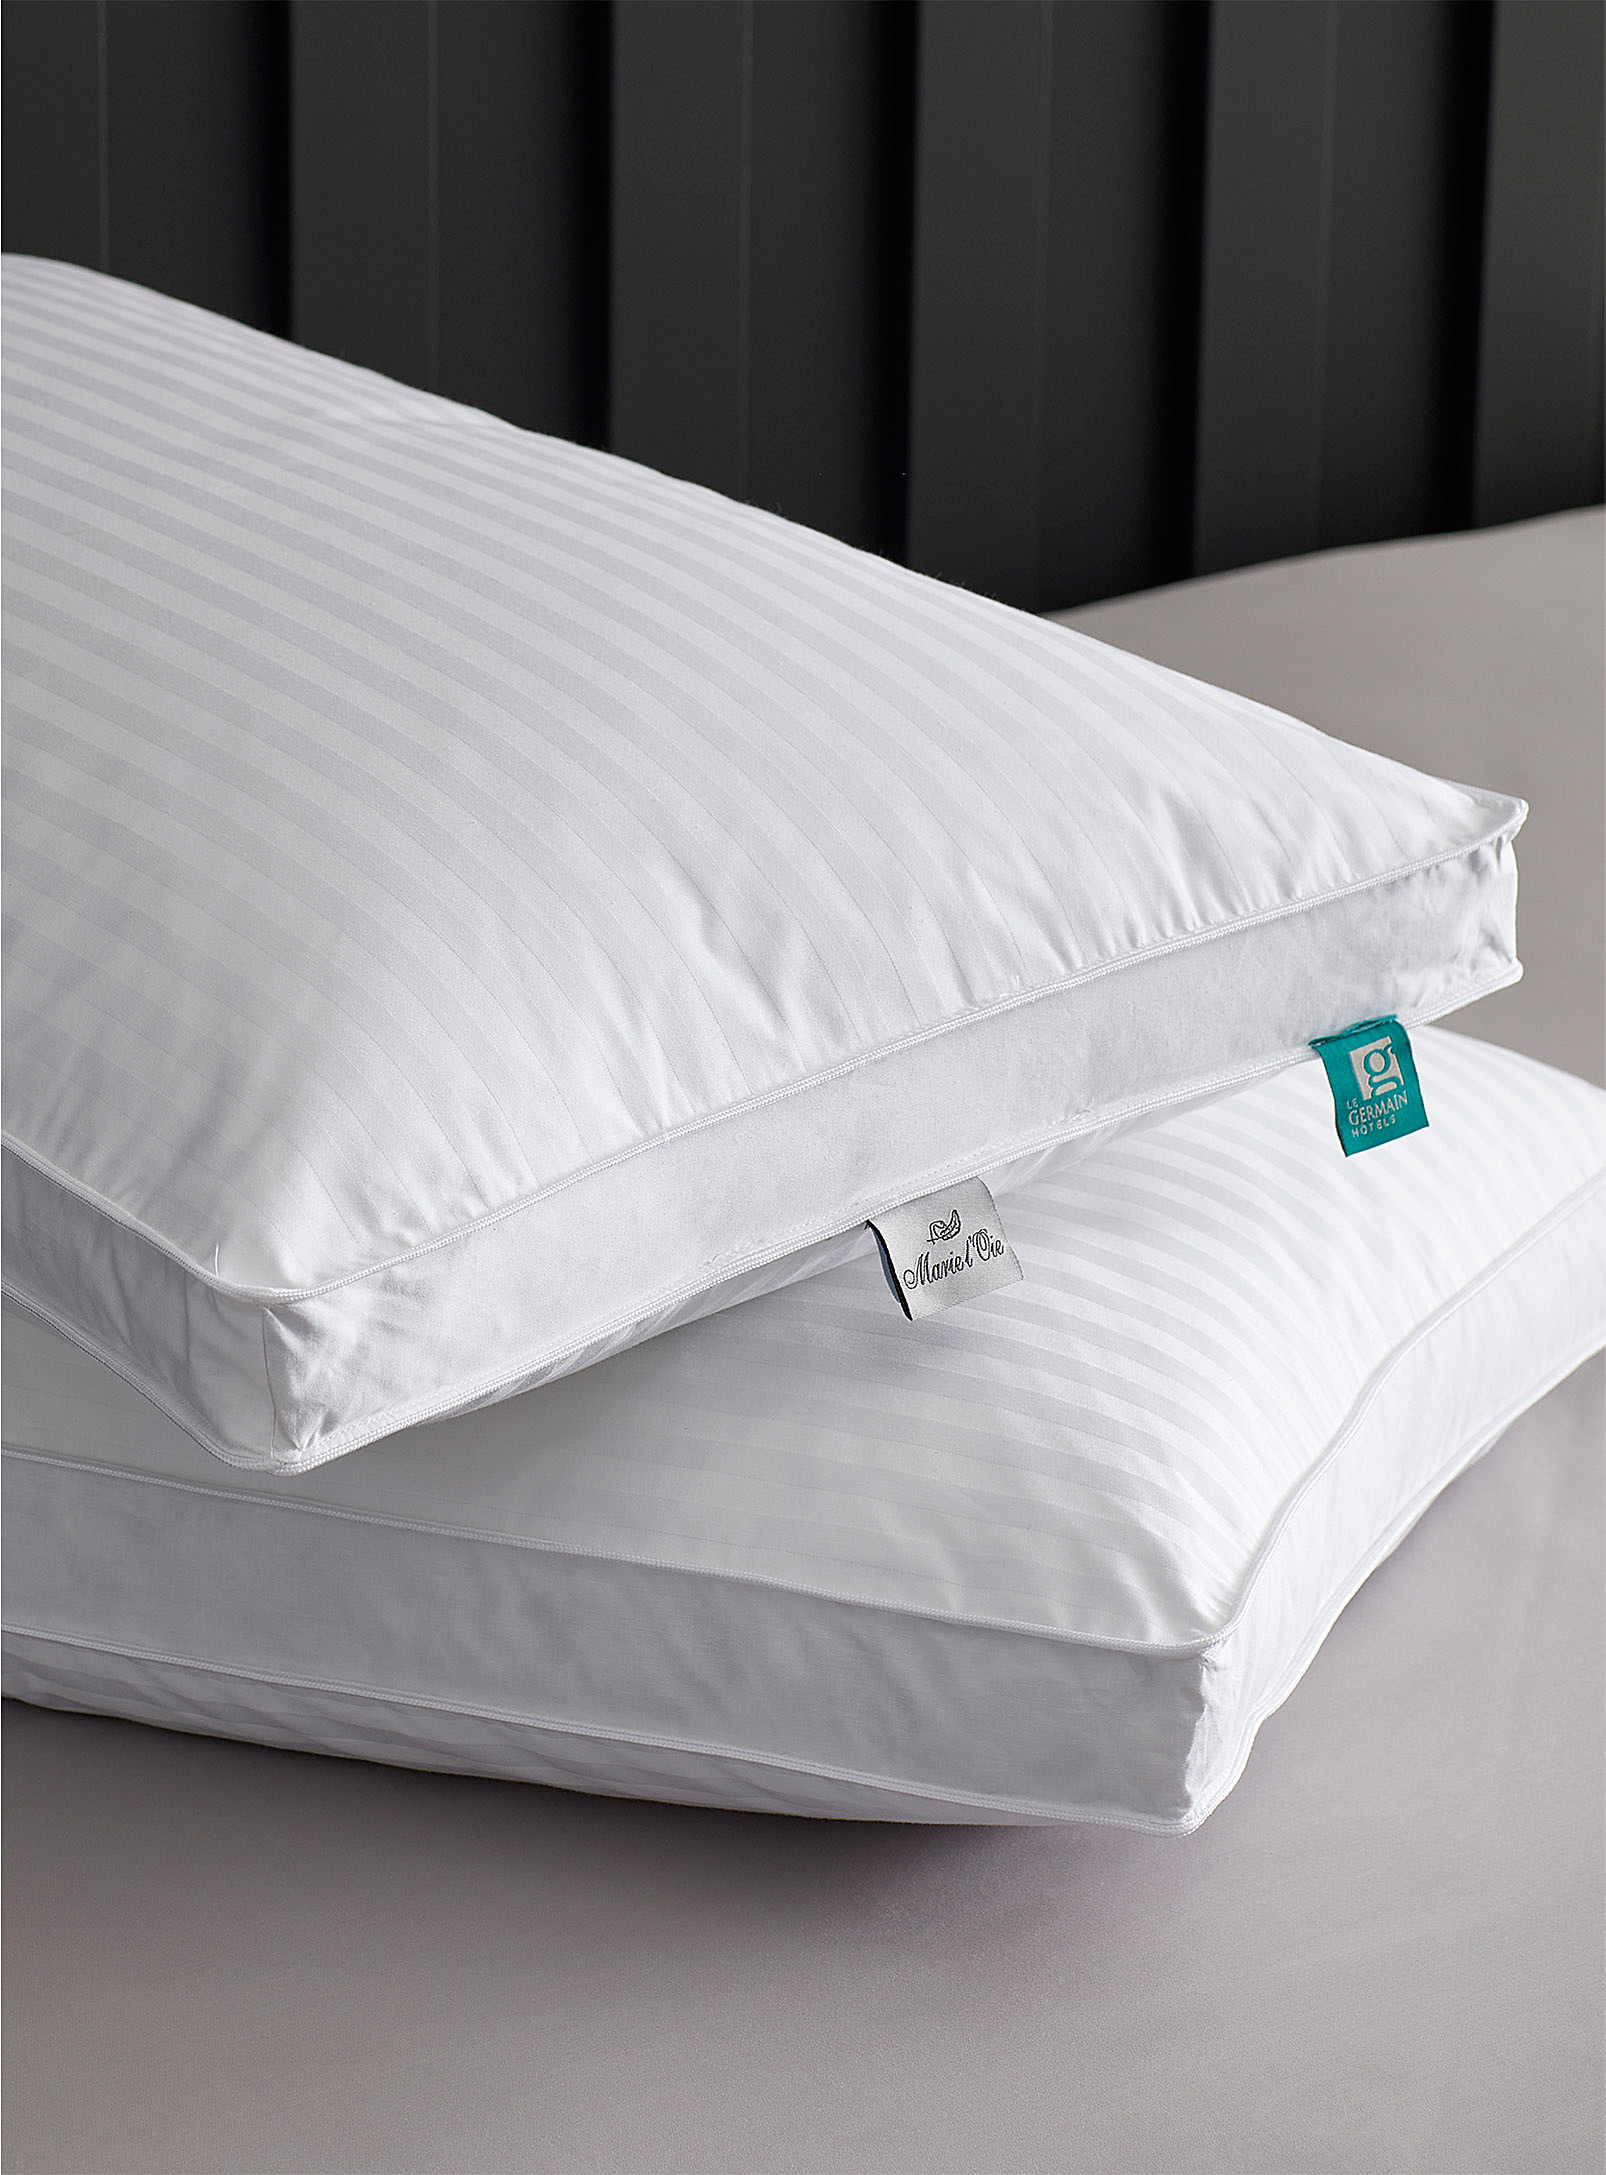 Hôtels Le Germain - Divine down pillow Soft support